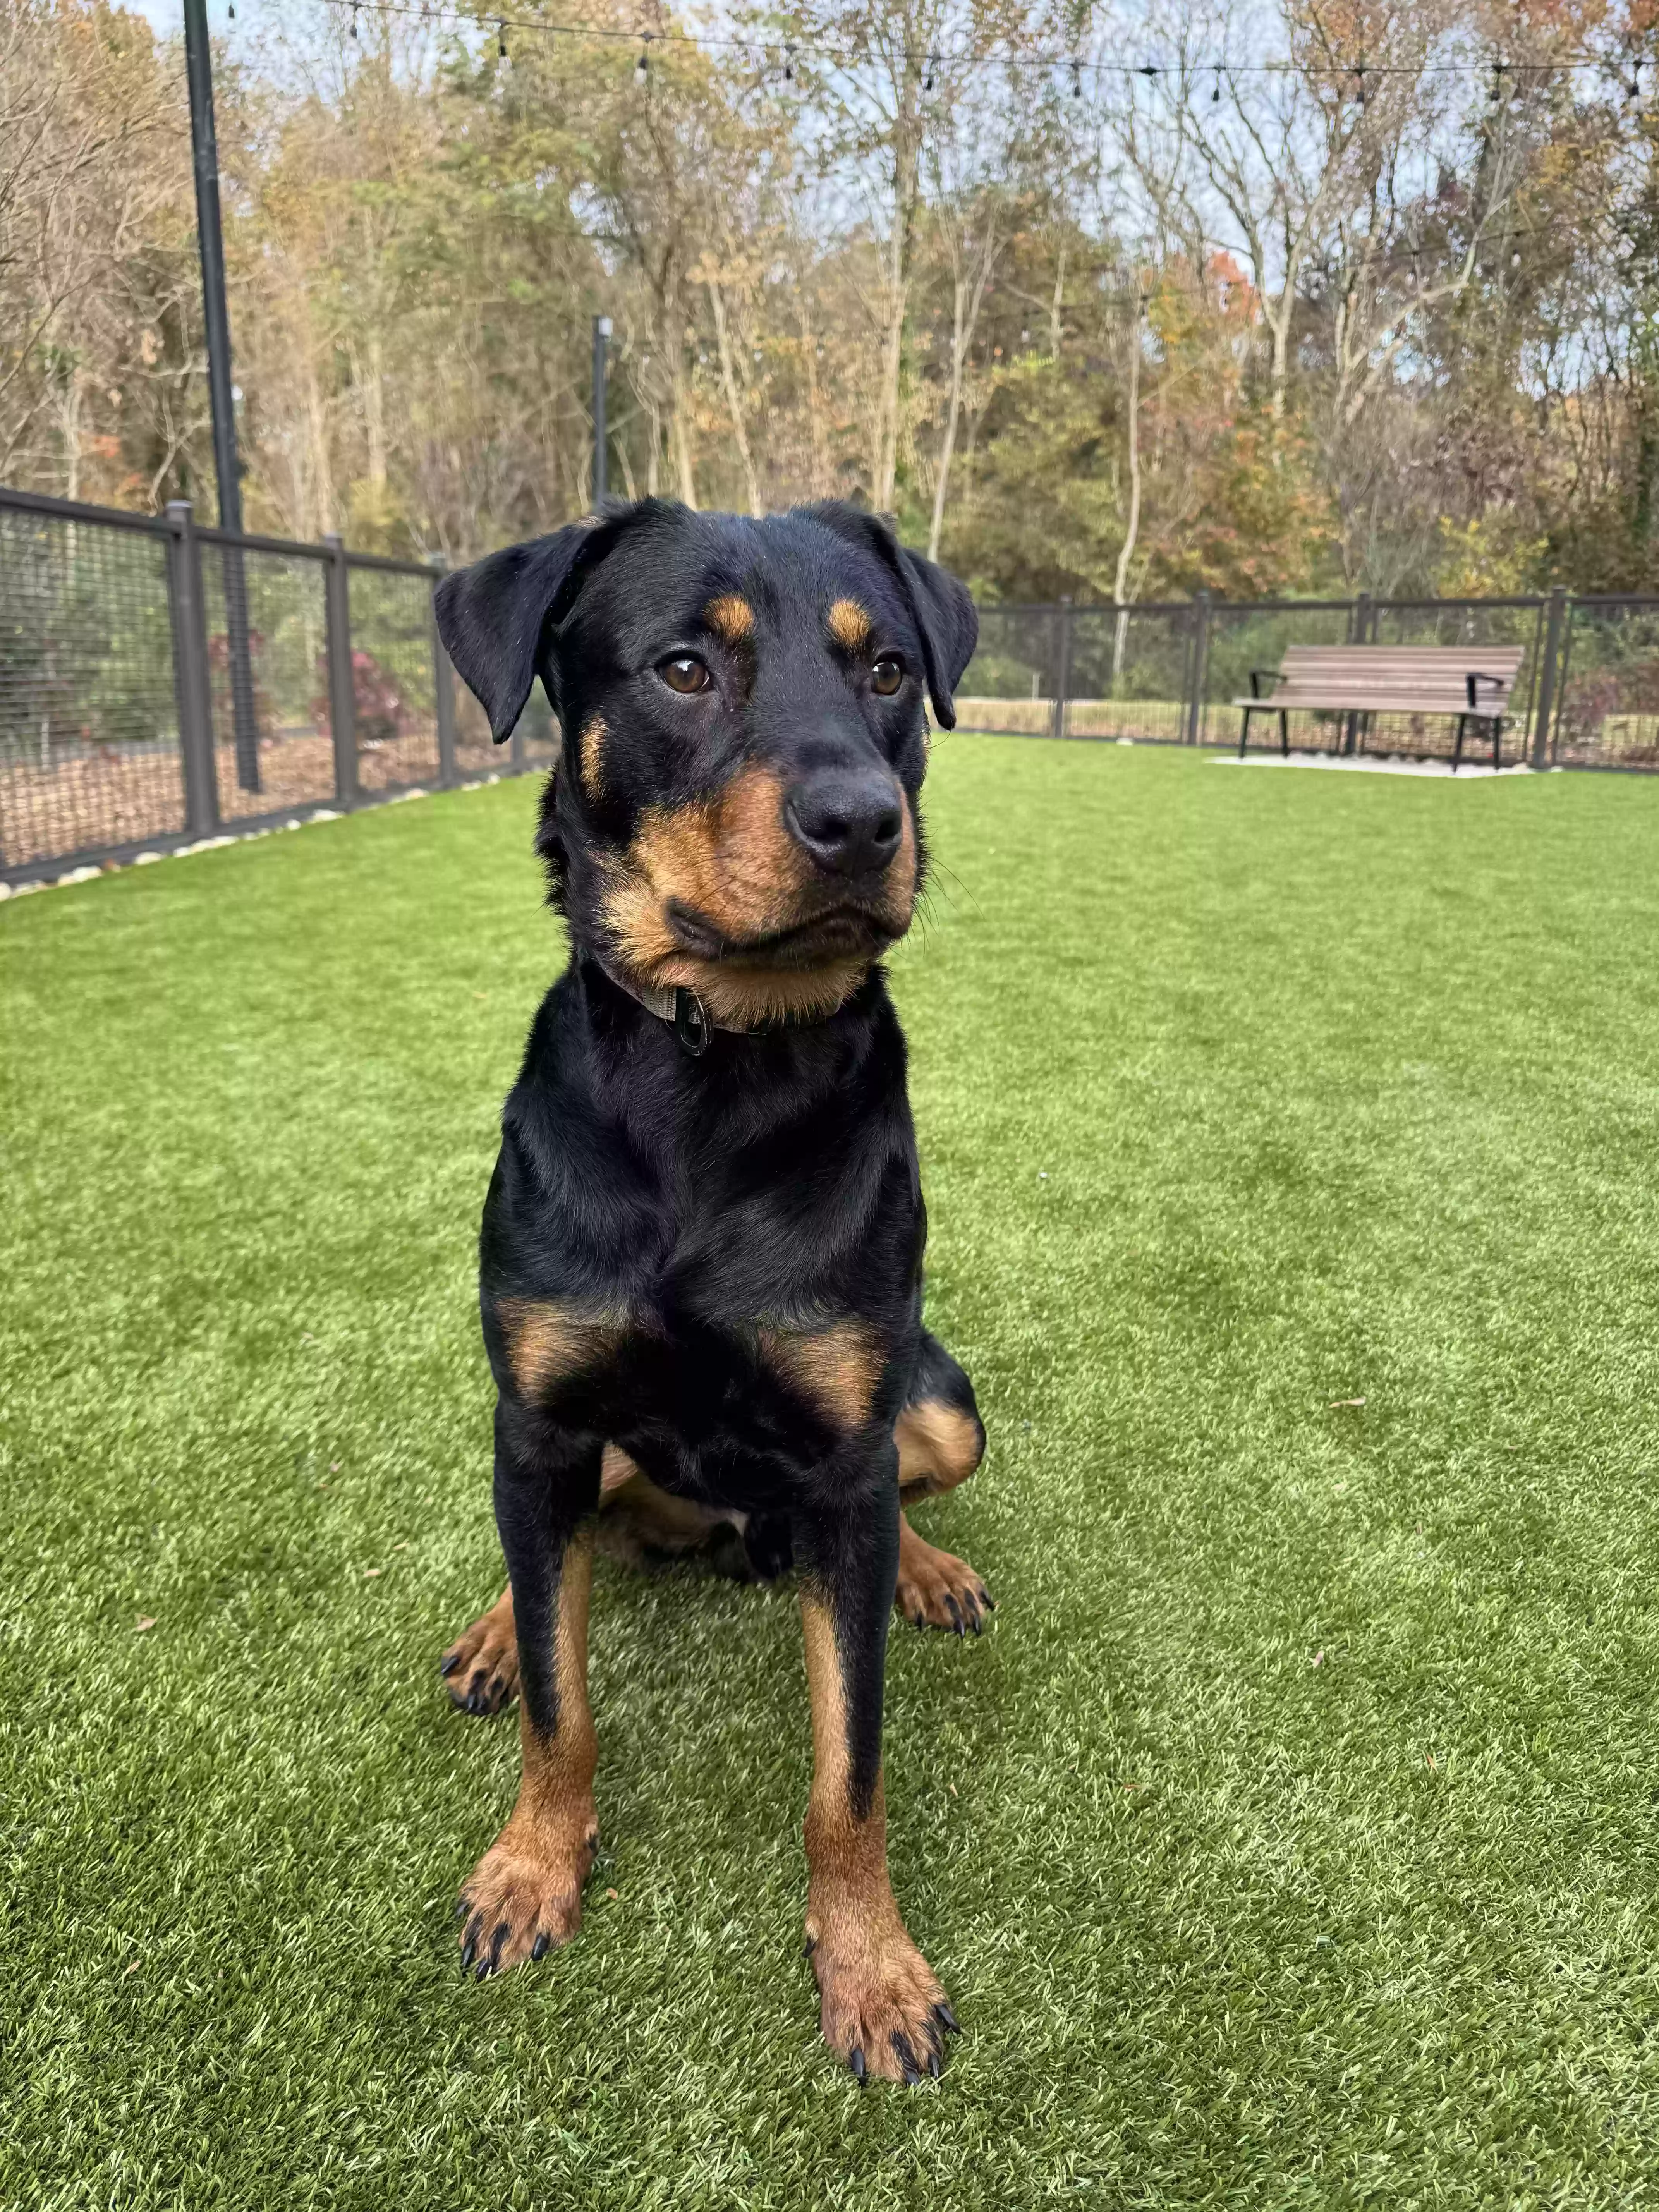 adoptable Dog in Atlanta,GA named Frankie